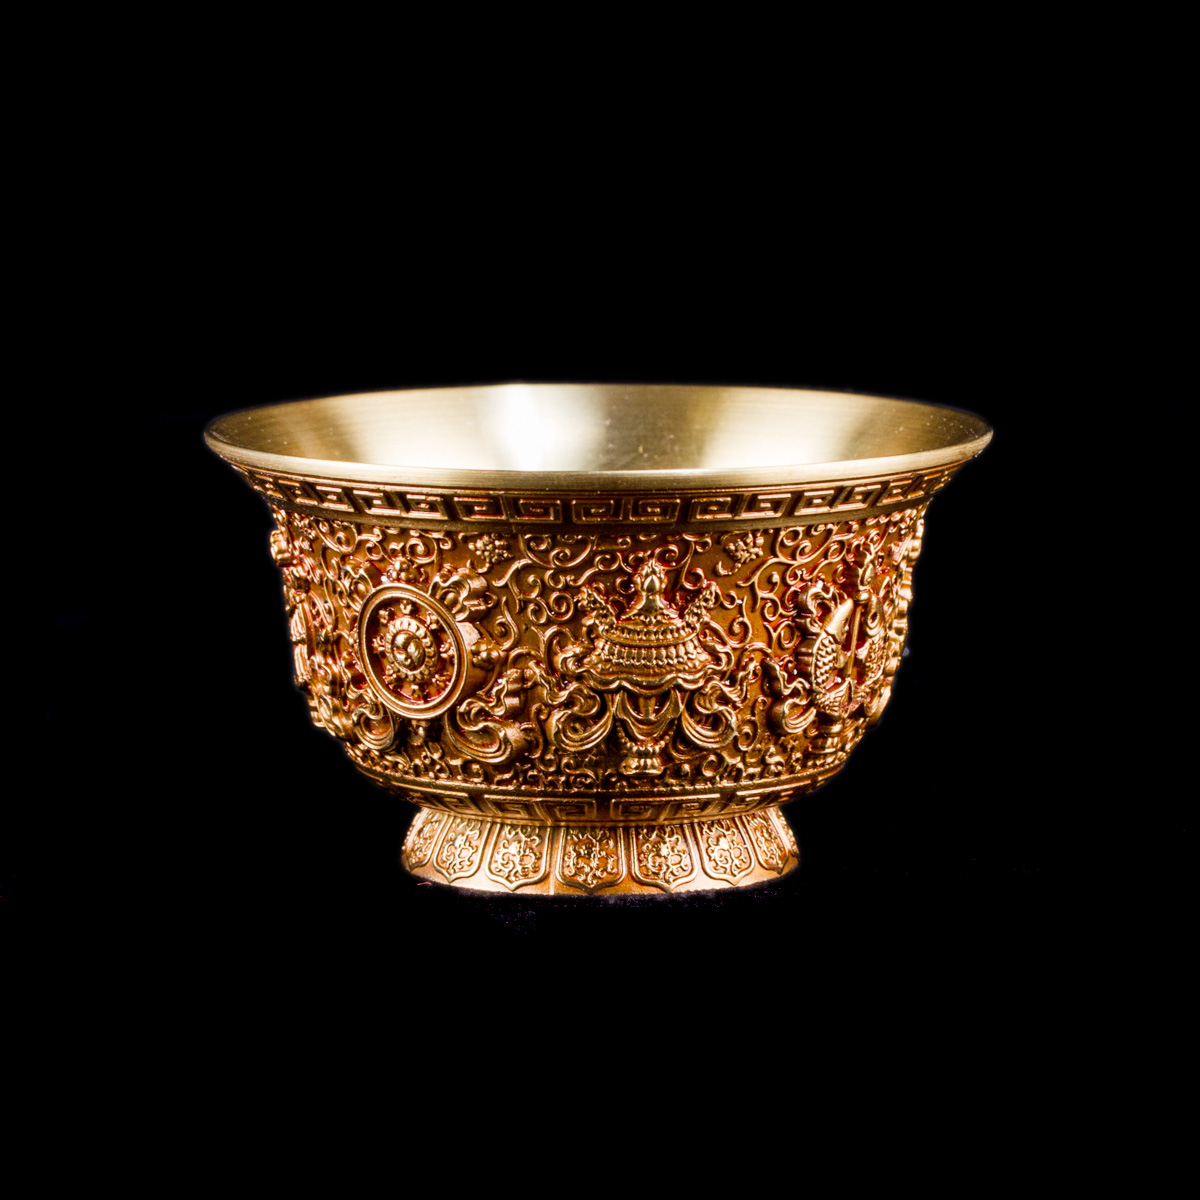 Чаши для подношений (набор из 7 шт.), 8,5 см, золотистые, металл, Китай